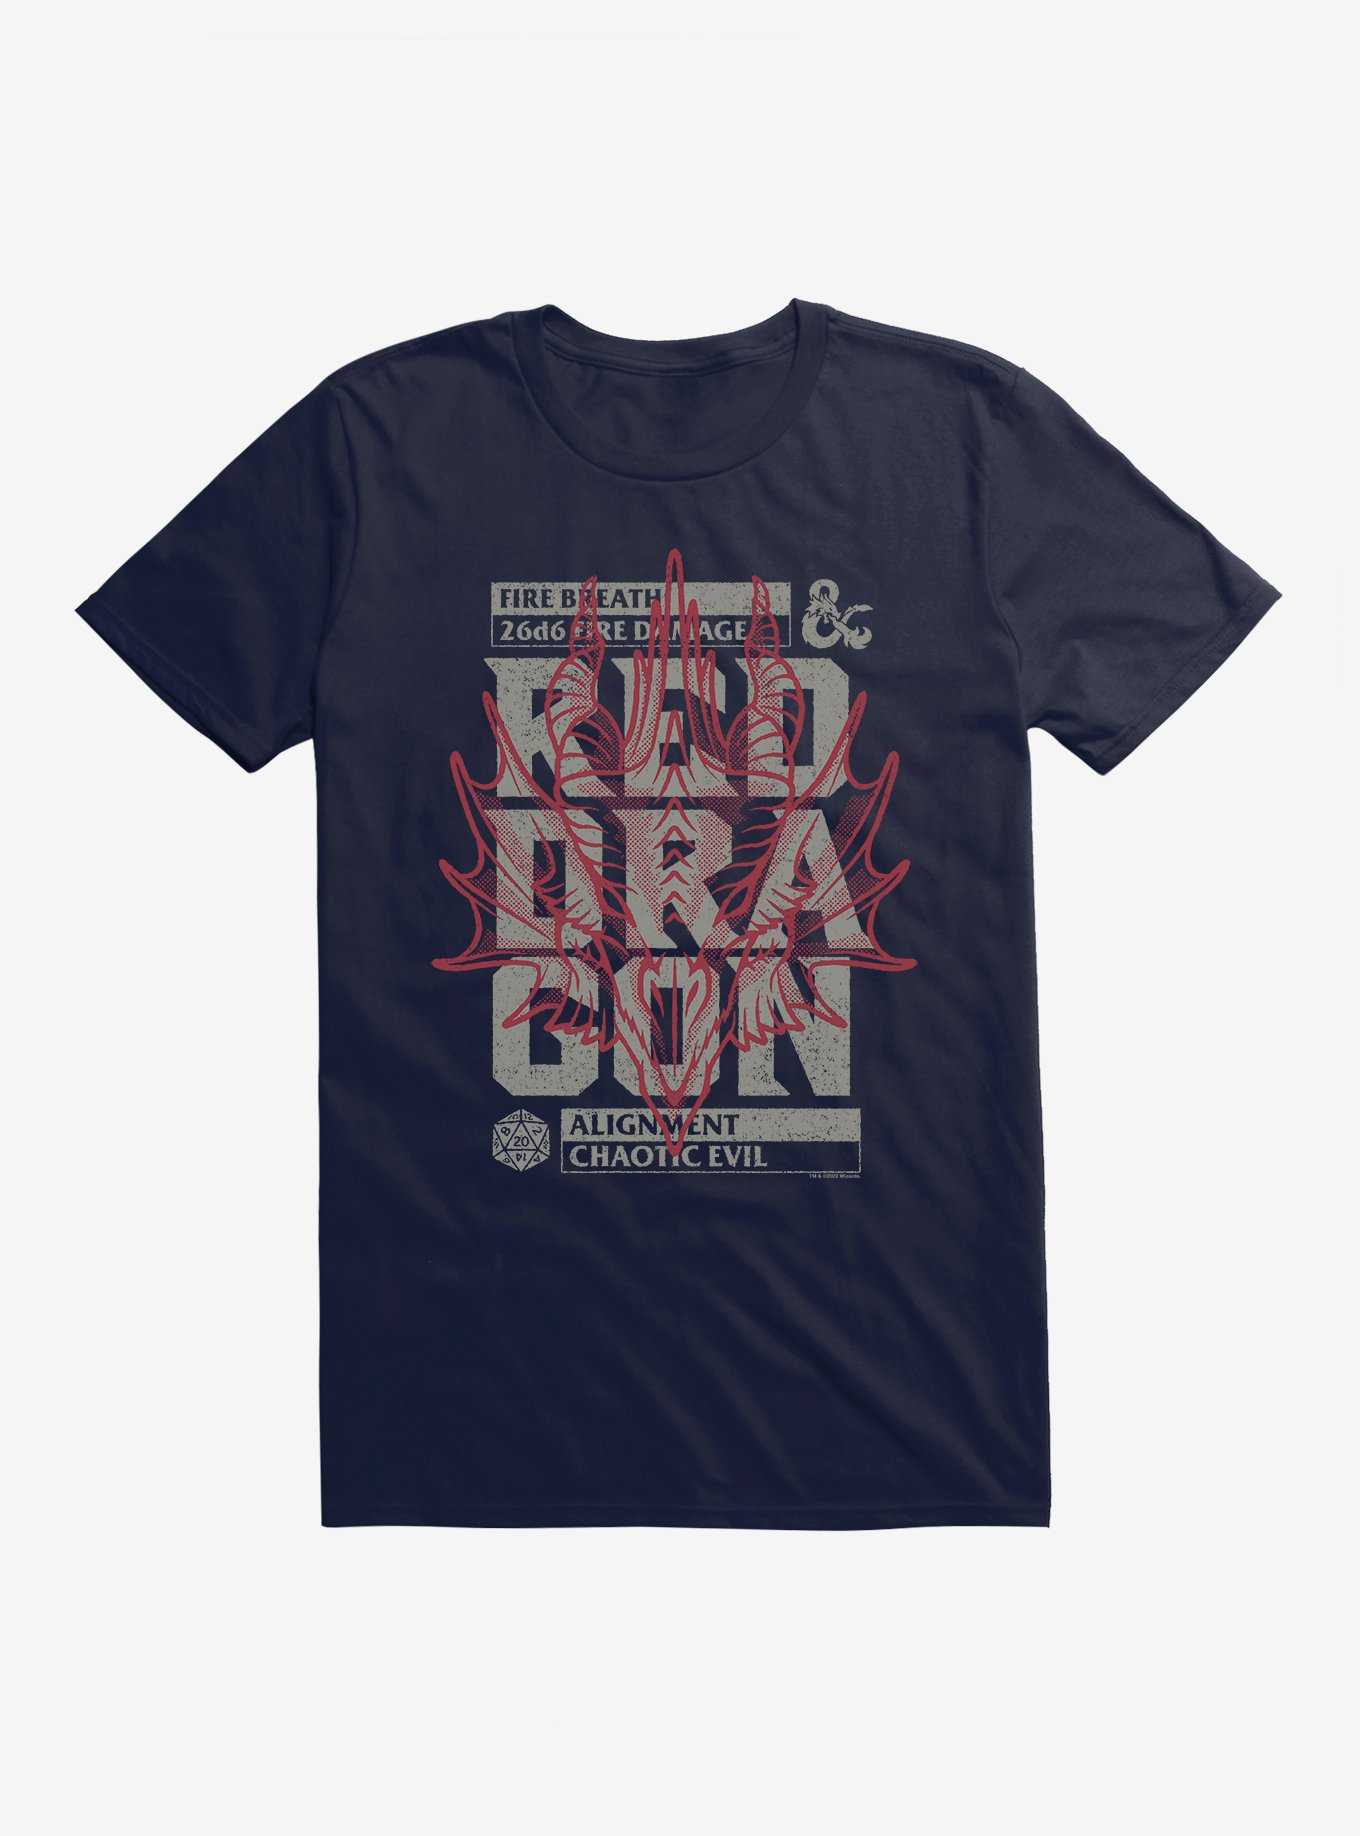 Dungeons & Dragons Red Dragon Stamp T-Shirt, , hi-res